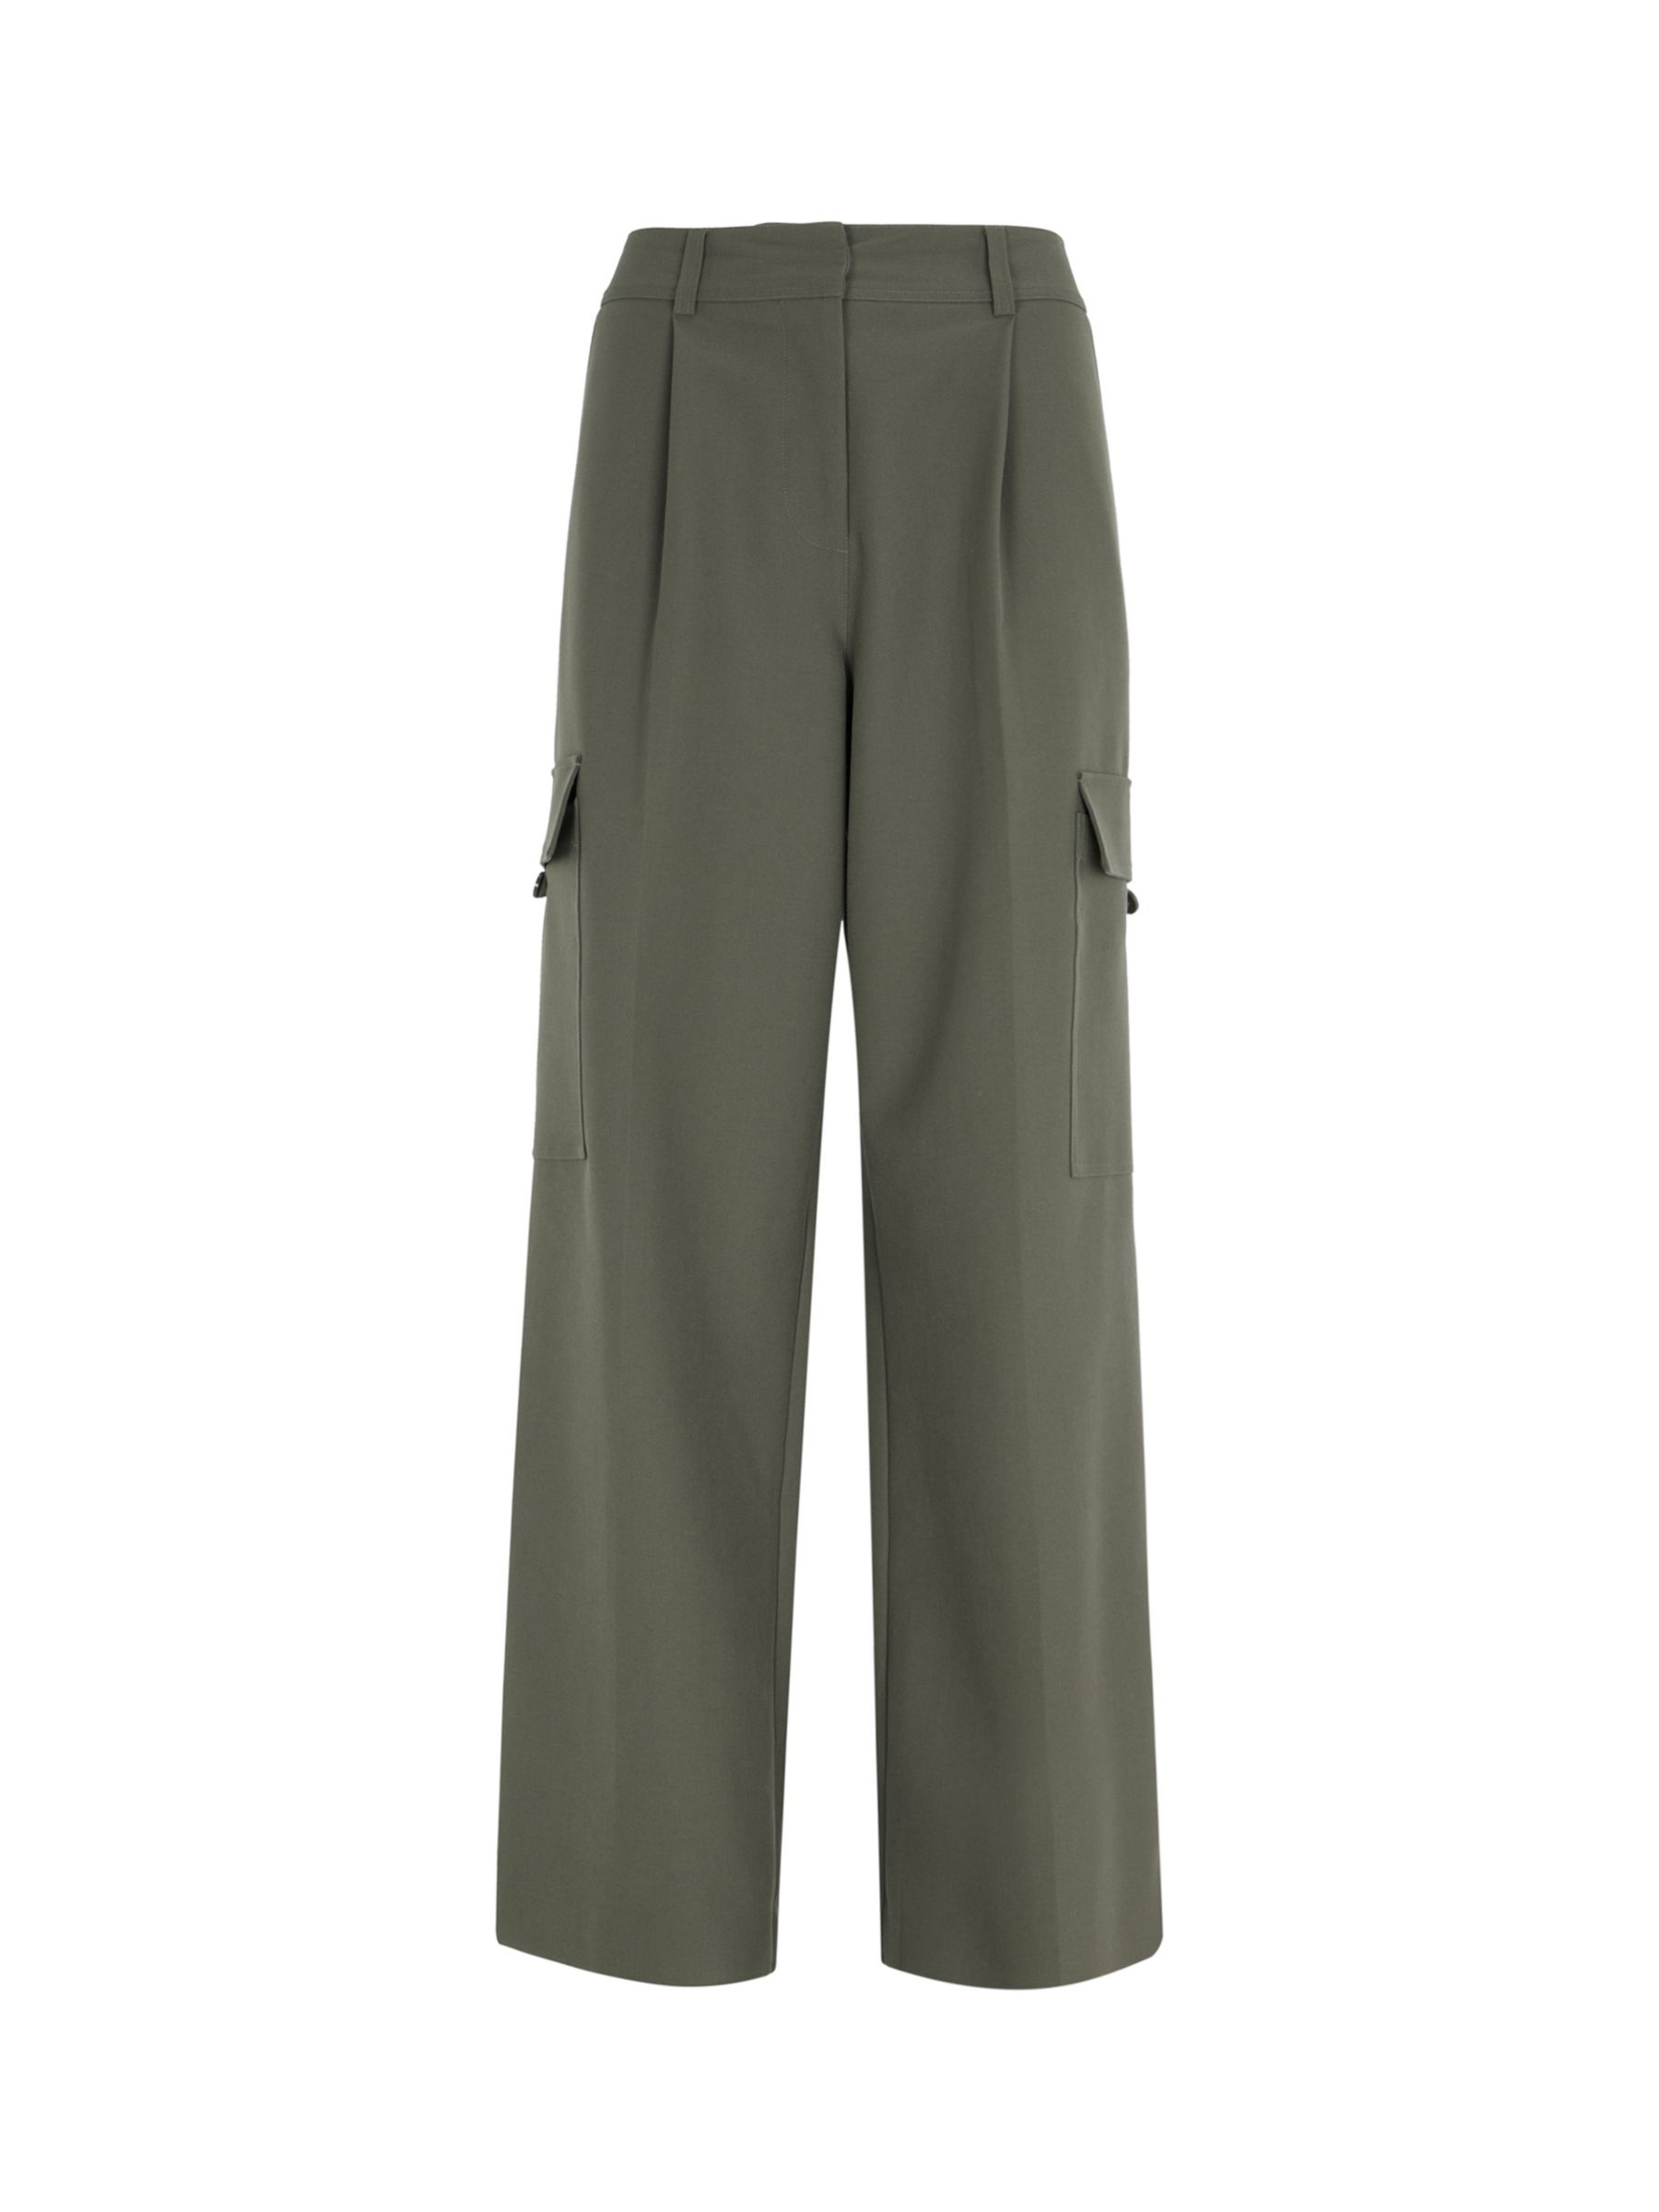 Buy Mint Velvet Straight Leg Tailored Cargo Trousers, Khaki Online at johnlewis.com